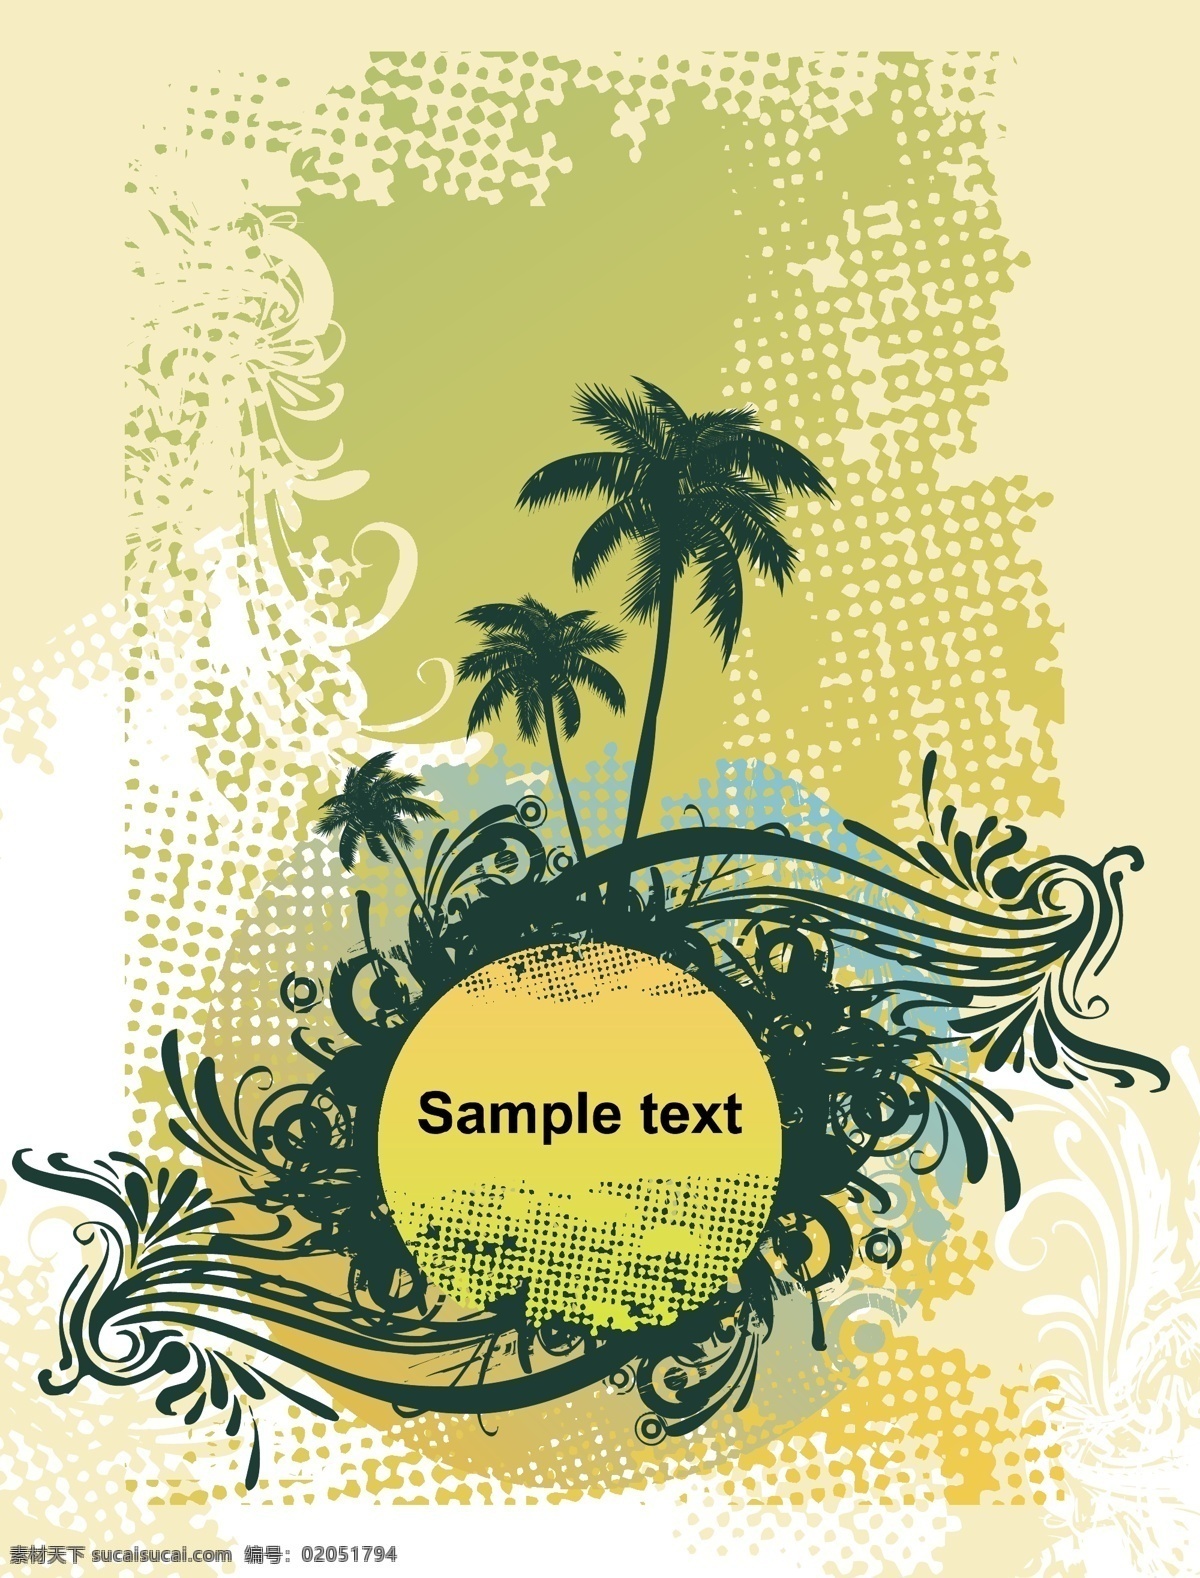 款 椰子树 主题 矢量下载 网页矢量 商业矢量 矢量传统图案 白色